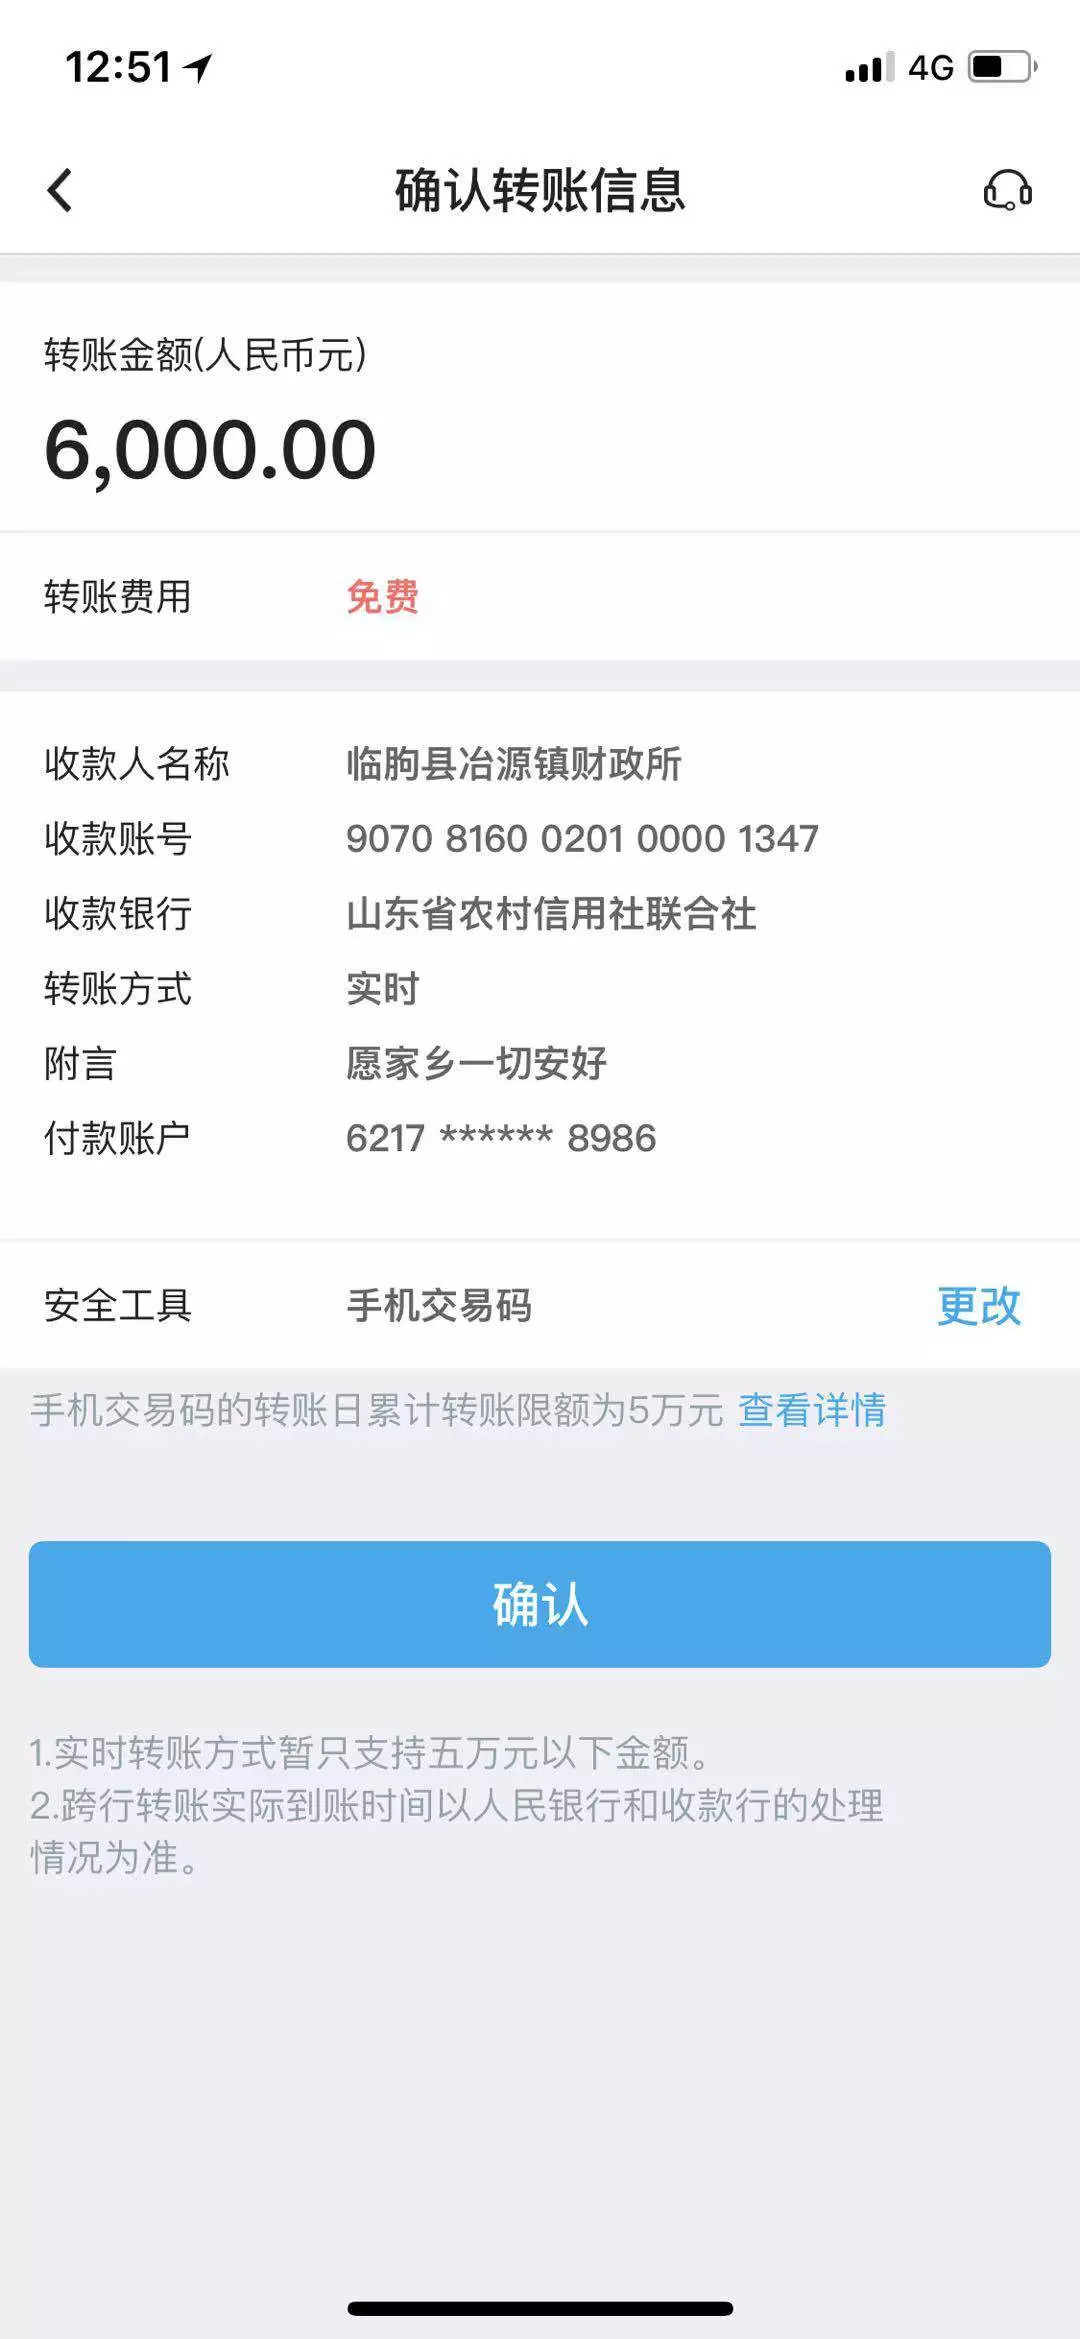 赤良峪村人,在青岛办公司, 网上转账捐赠6000元